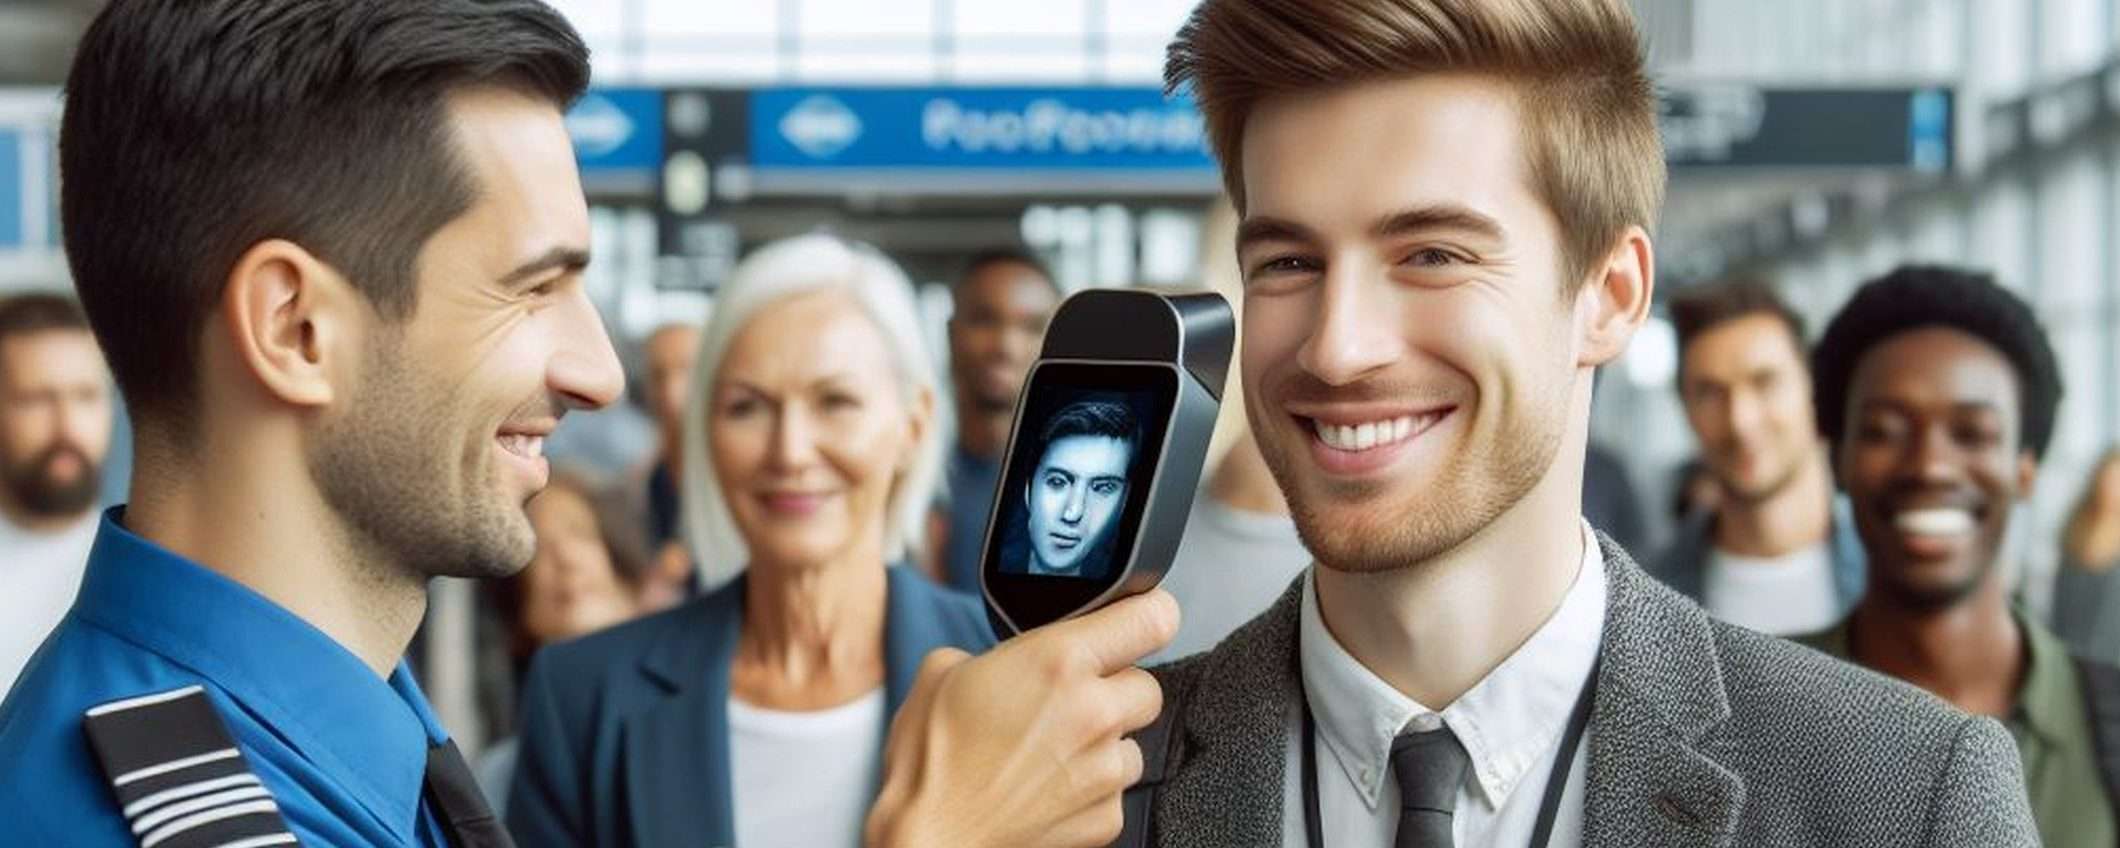 Riconoscimento facciale: rischi in aeroporto